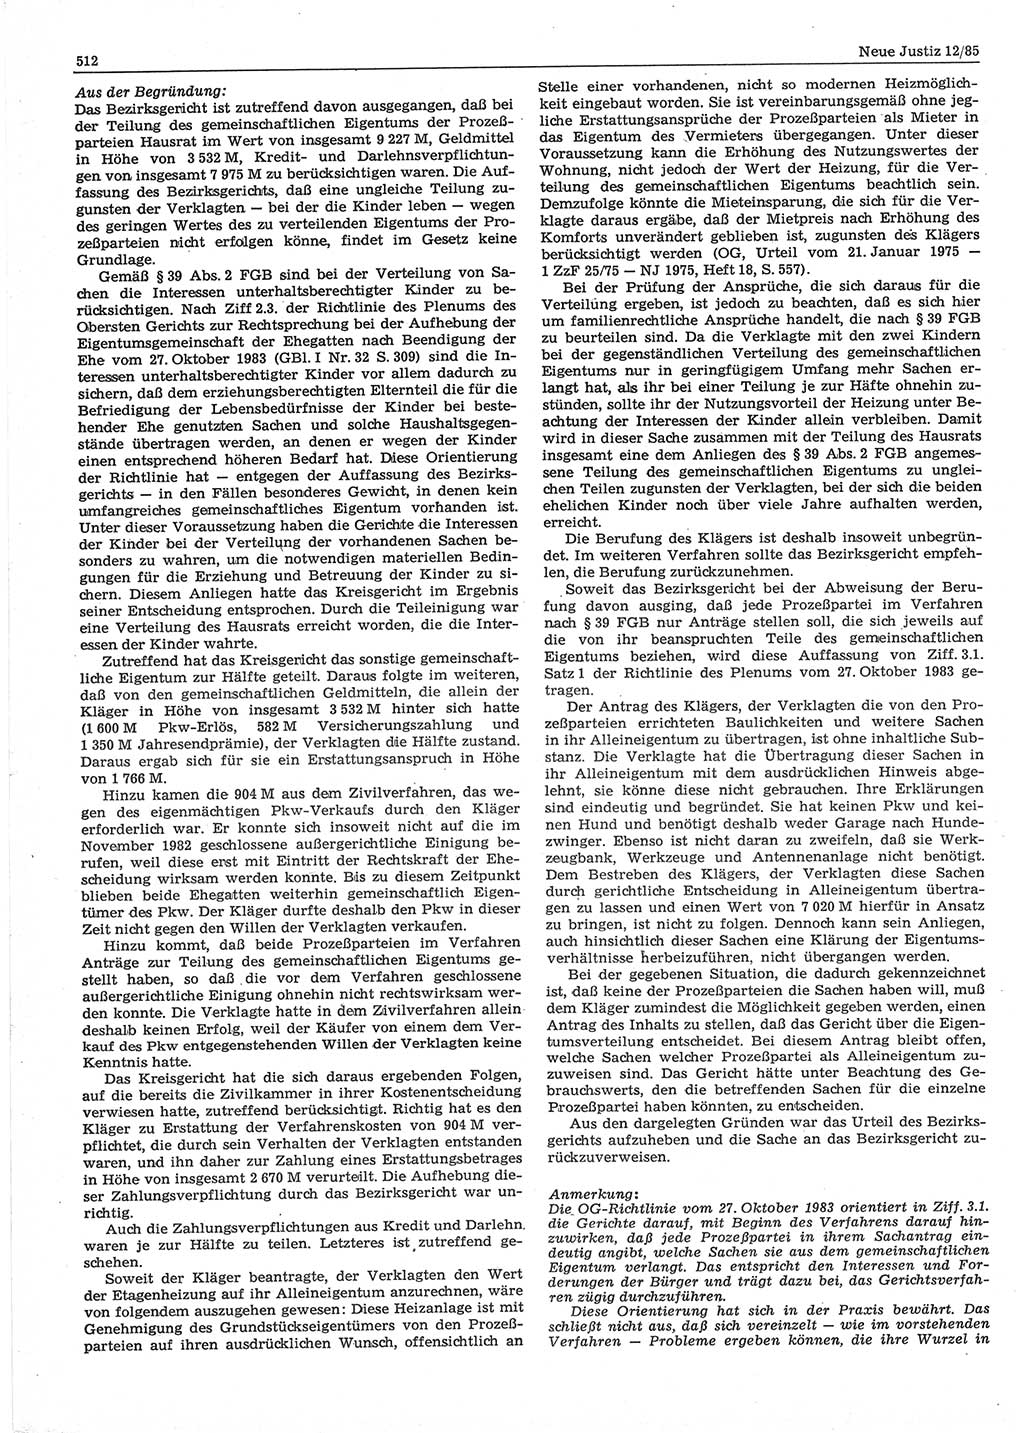 Neue Justiz (NJ), Zeitschrift für sozialistisches Recht und Gesetzlichkeit [Deutsche Demokratische Republik (DDR)], 39. Jahrgang 1985, Seite 512 (NJ DDR 1985, S. 512)